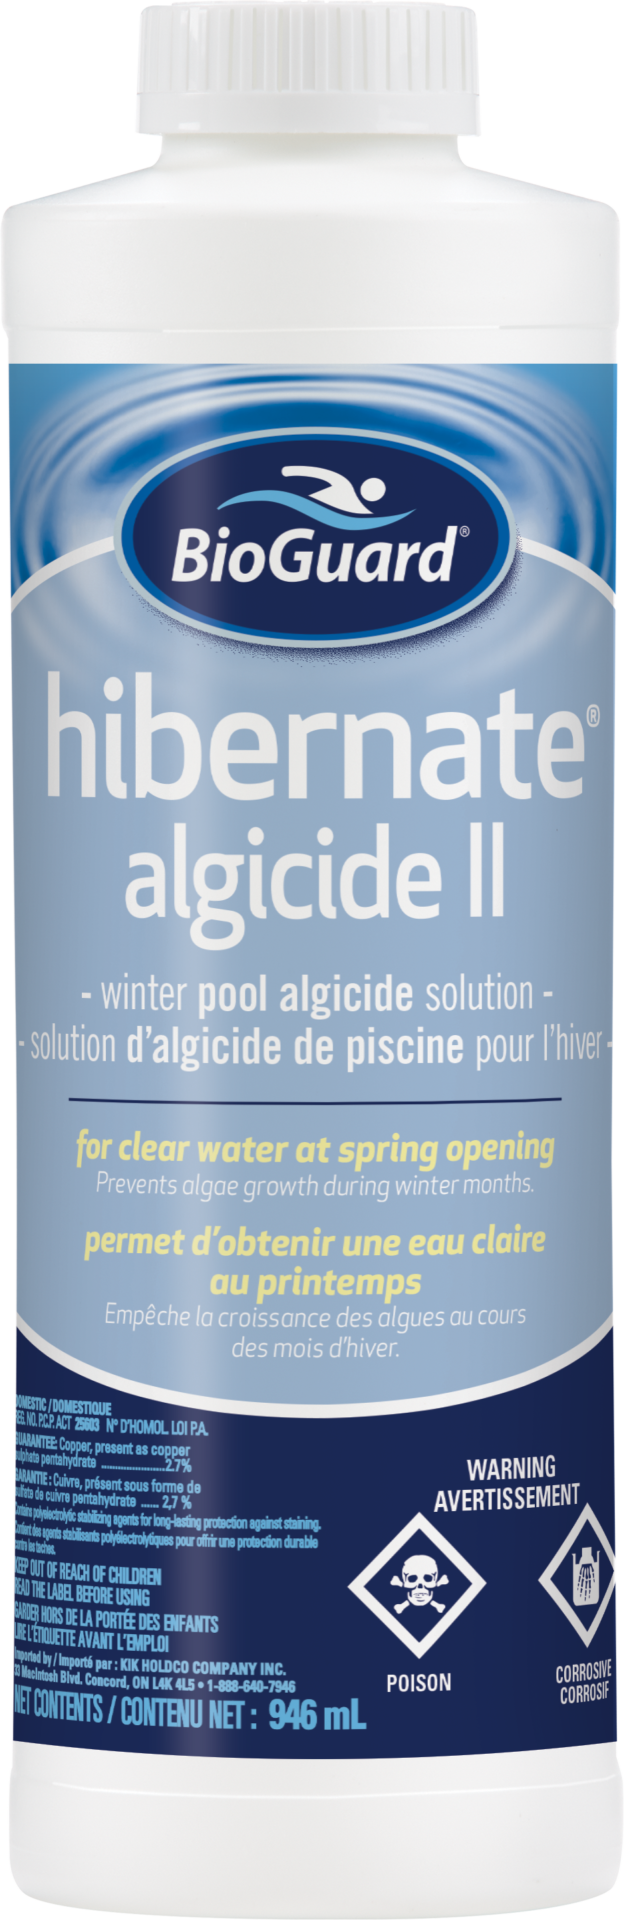 BioGuard Hibernate Algicide II 946ml - BioGuard Hibernate Algicide II 946ml